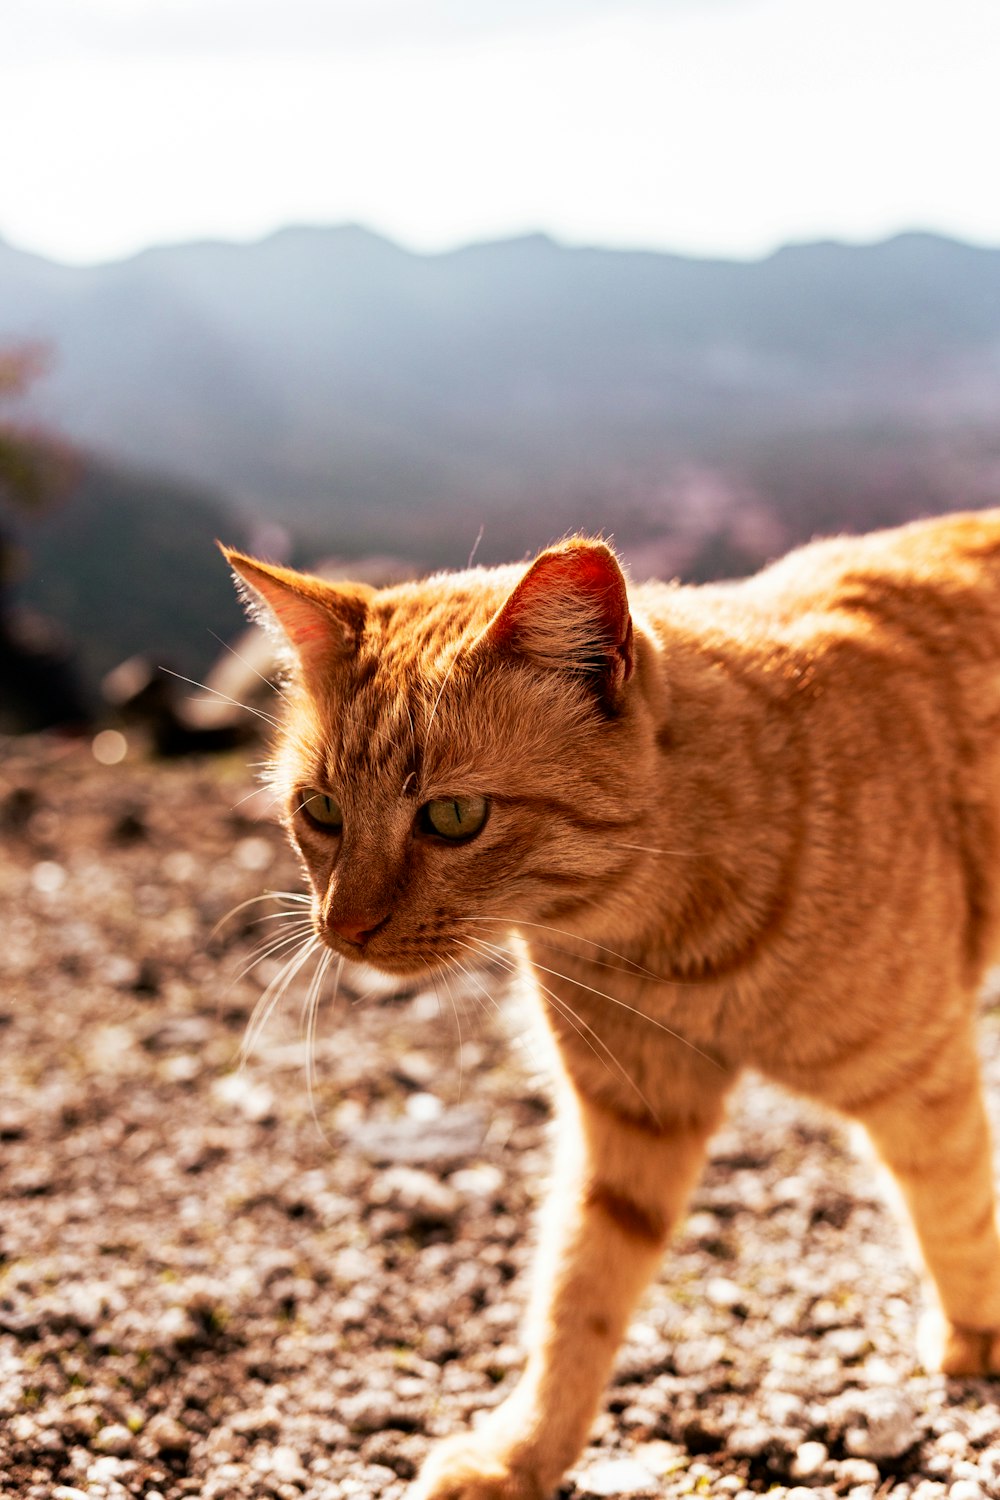 an orange cat walking across a rocky field